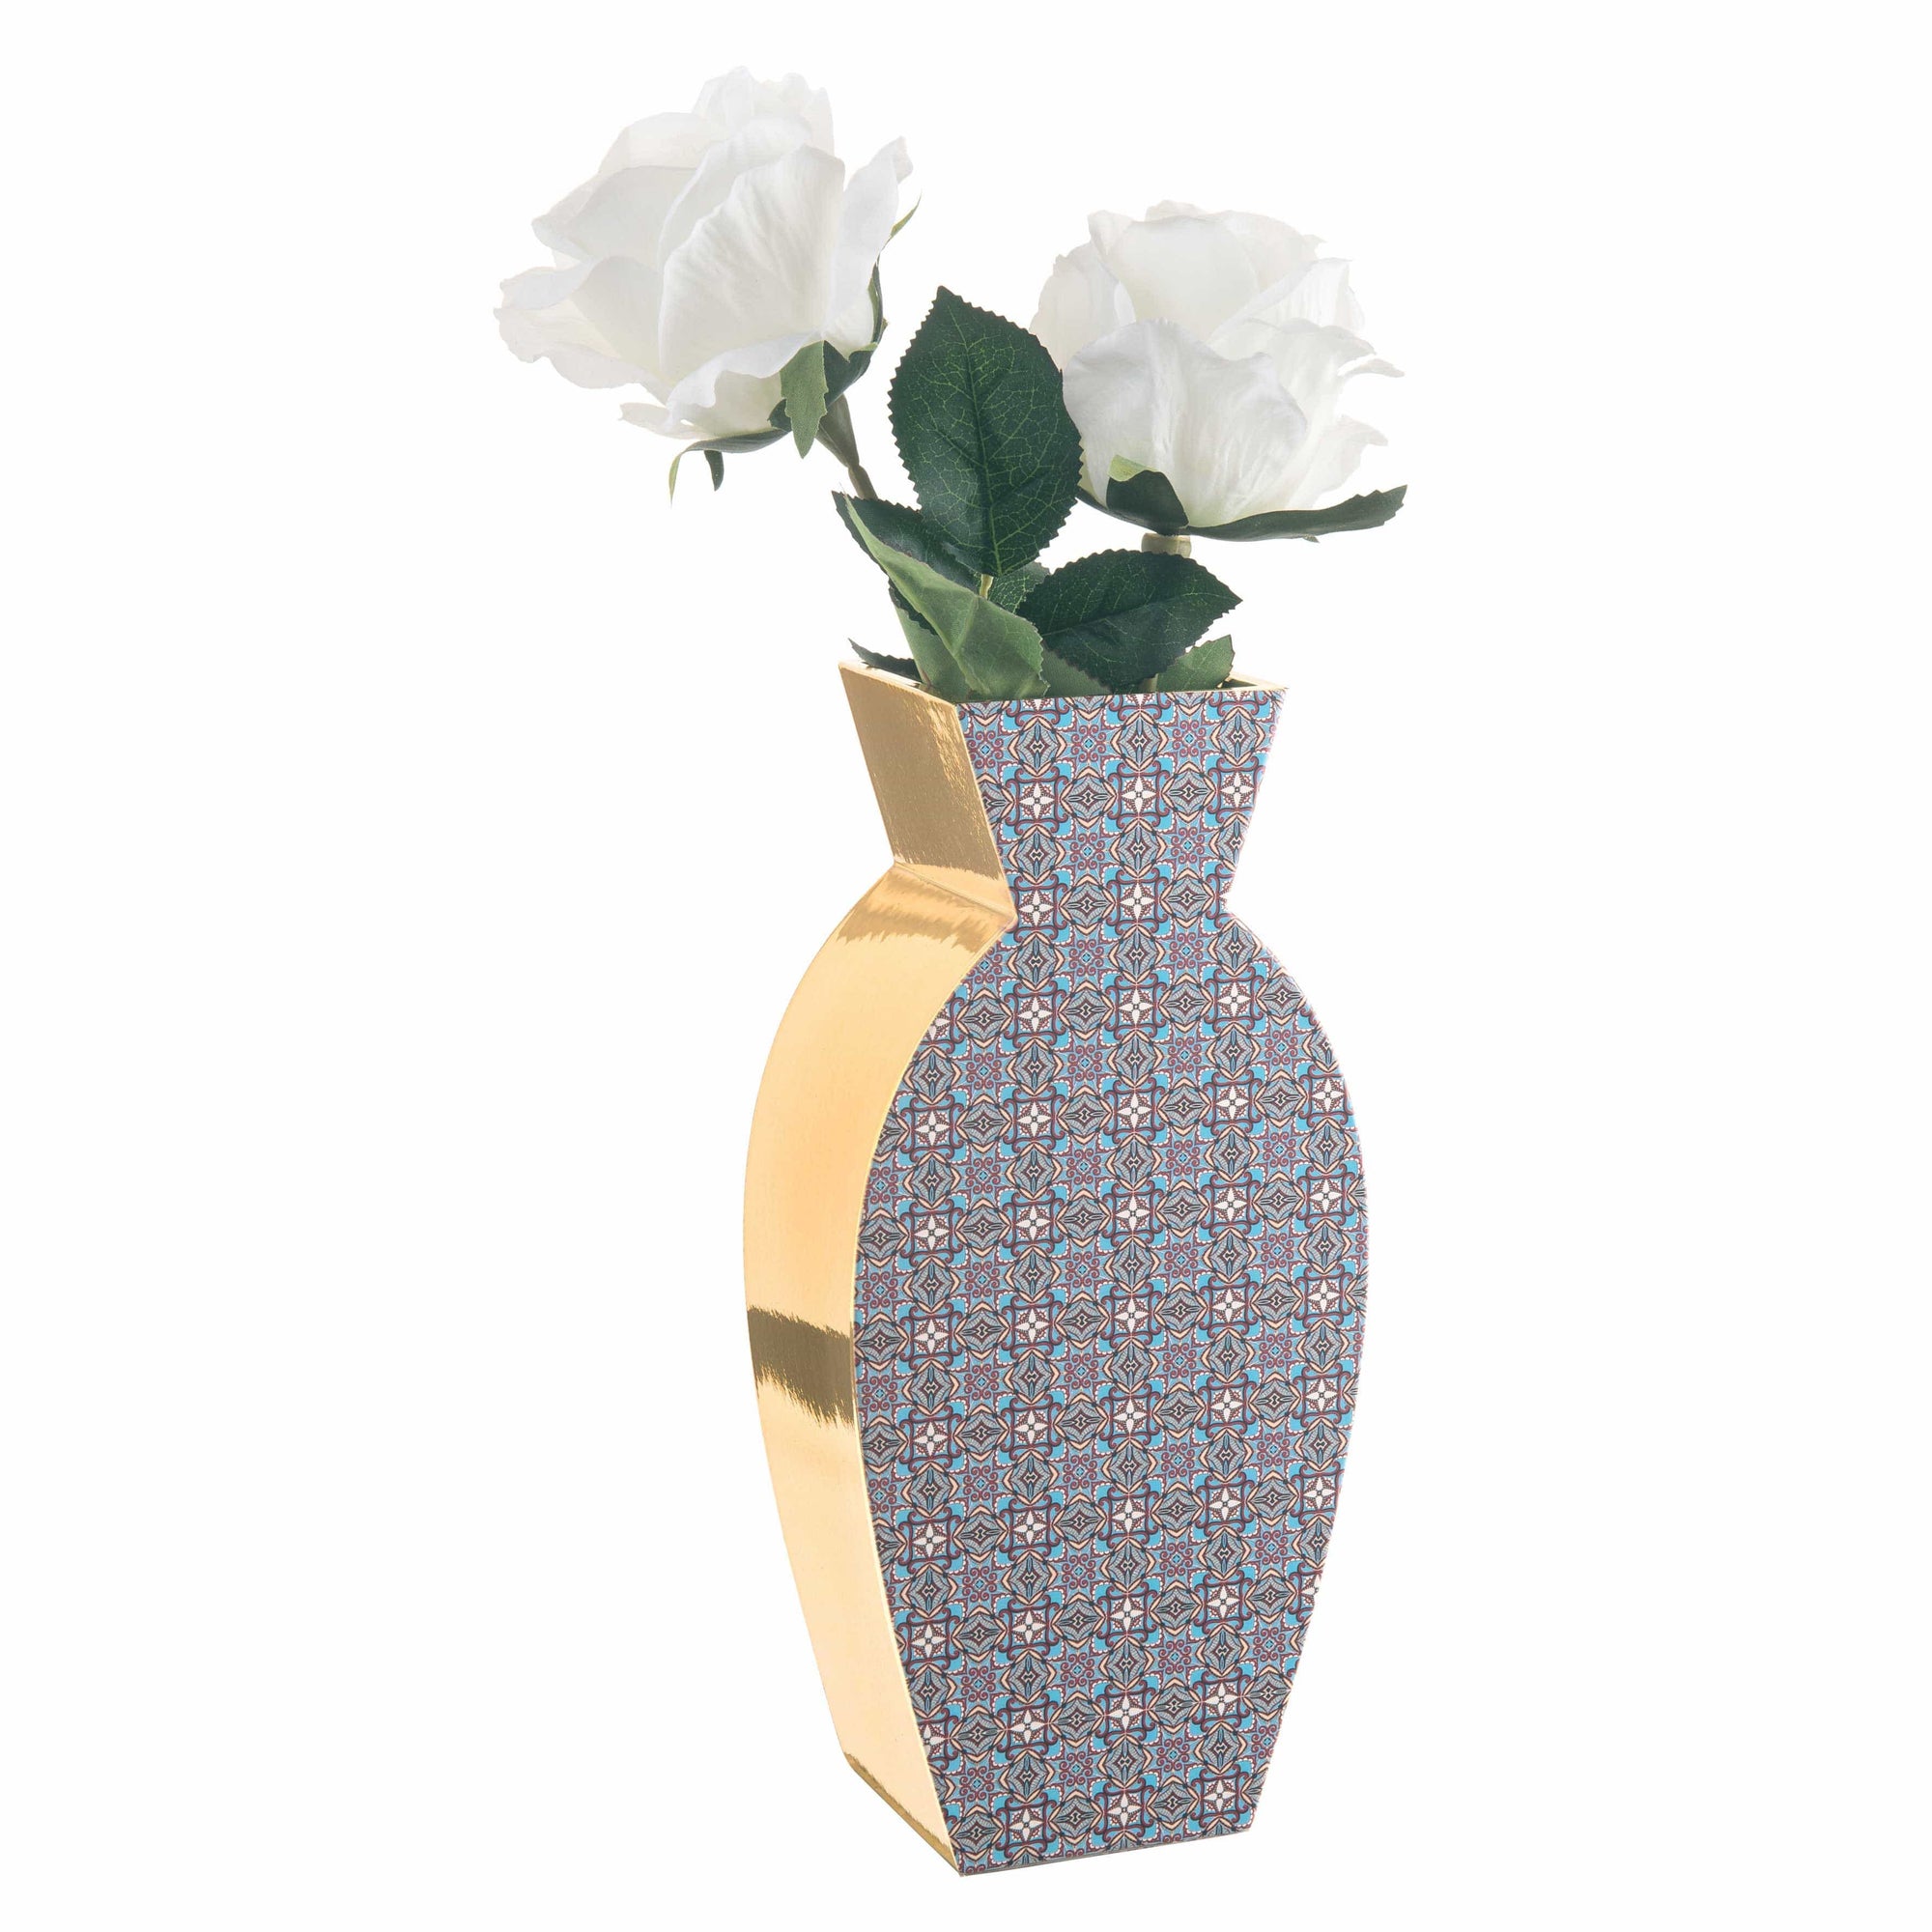 Vaso in ceramica di design moderno con maioliche particolari dorati - Dolci pensieri gift